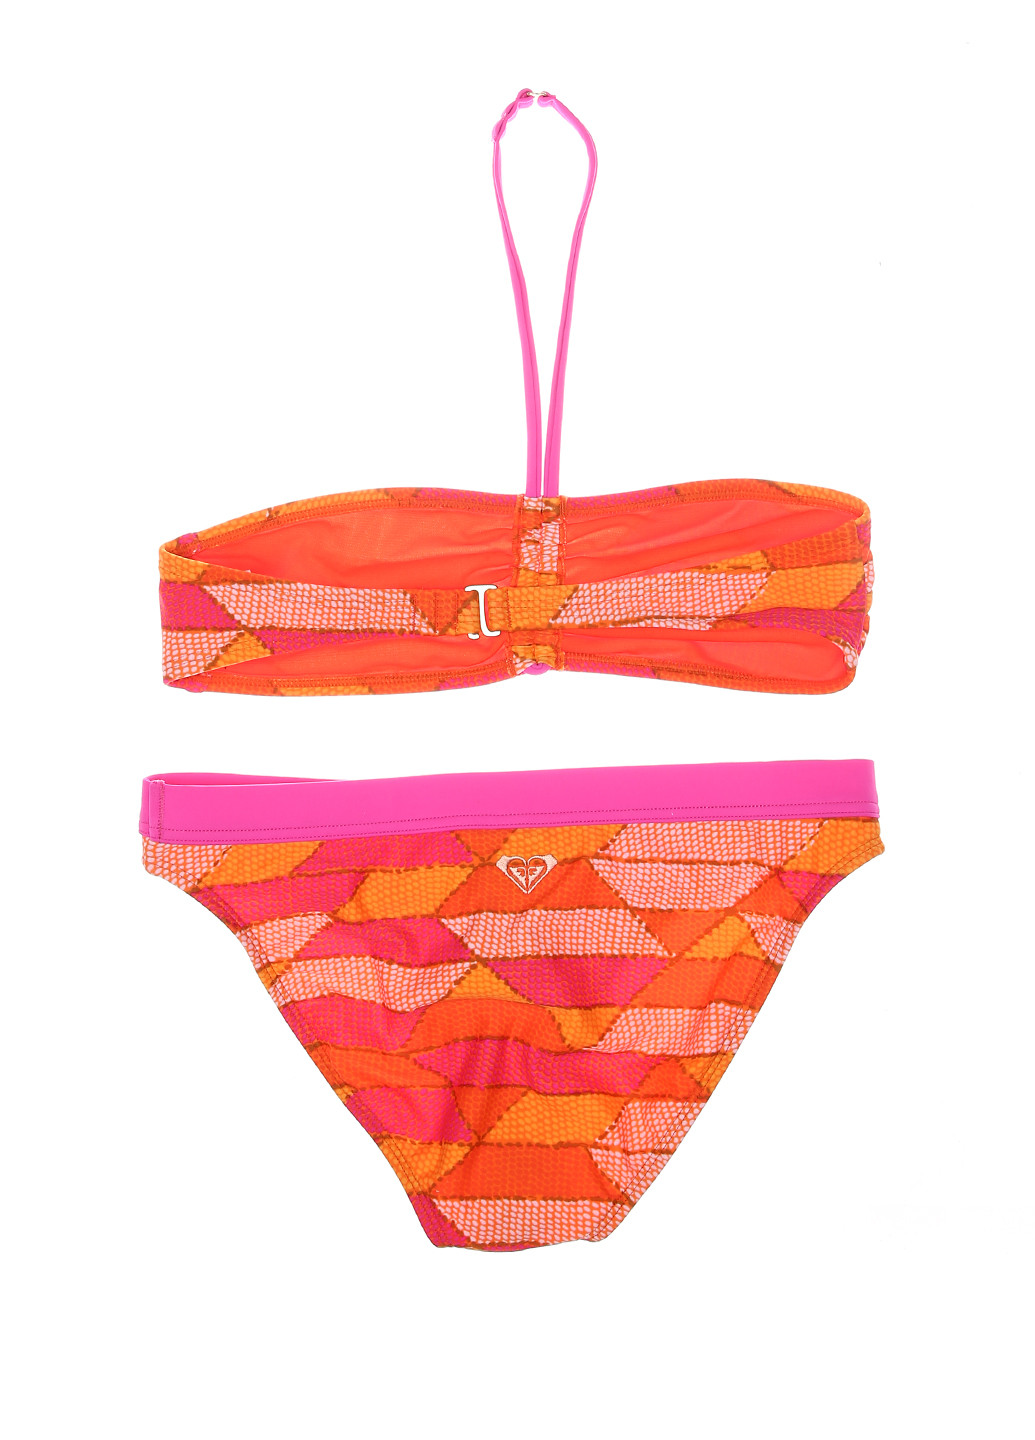 Оранжевый летний купальник (лиф, трусы) бандо Roxy